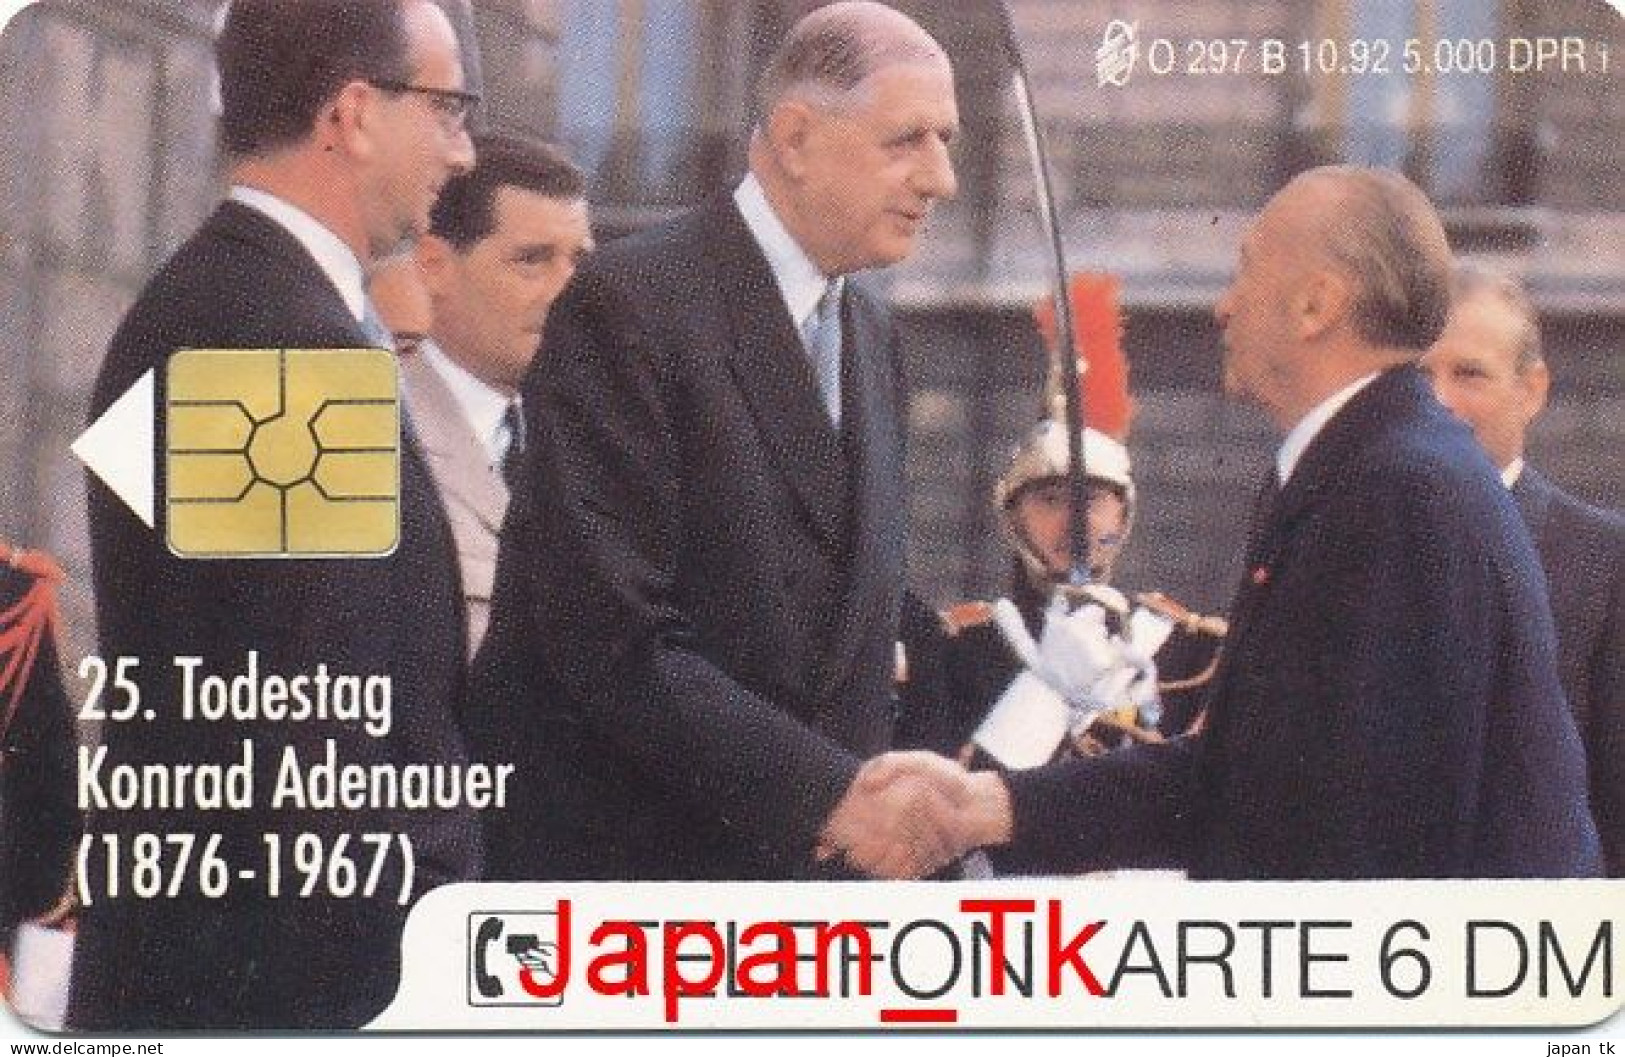 GERMANY O 297 A/B 25. Todestag Konrad Adenauer - Aufl  5 000 - Siehe Scan - O-Series: Kundenserie Vom Sammlerservice Ausgeschlossen